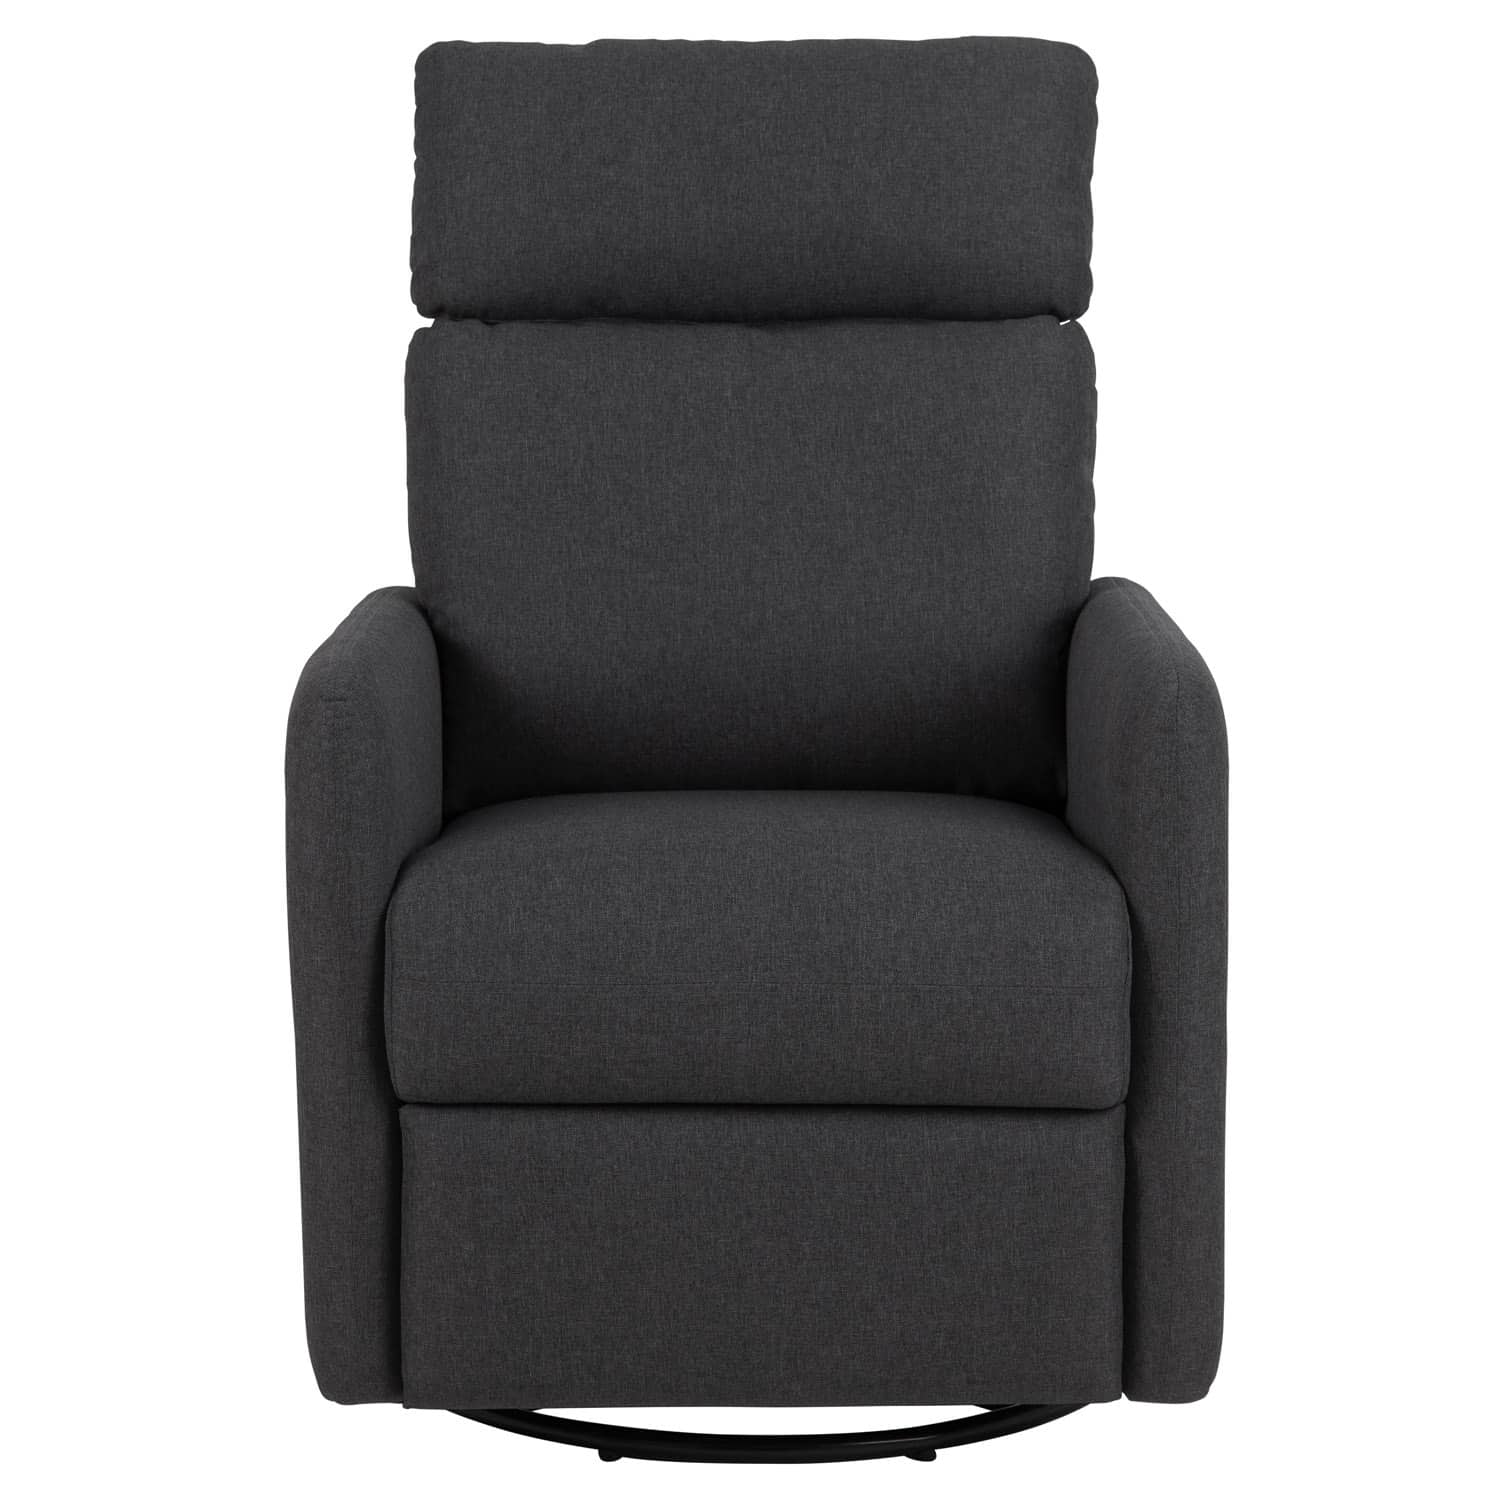 ACT NORDIC Mikkeli recliner stol, m. drejefod og vippefunktion - grå og sort metal - Lænestol Med Vippefunktion